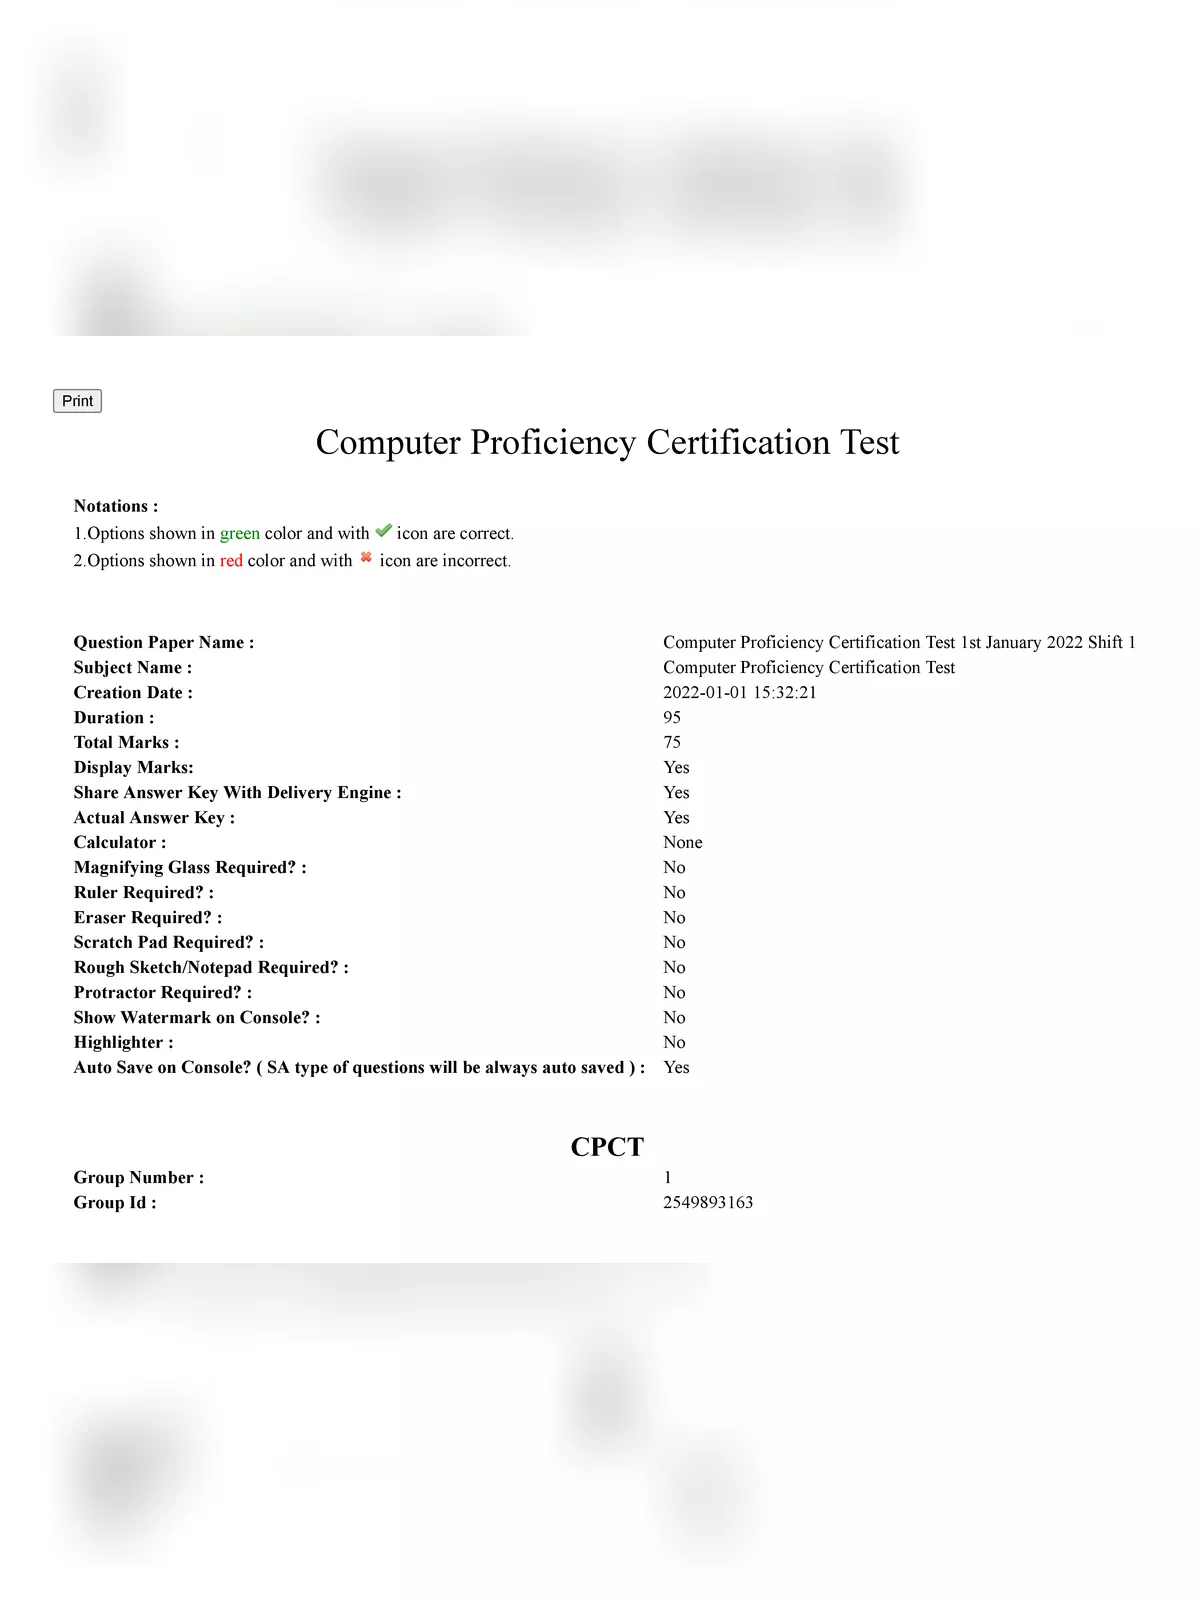 CPCT Exam Paper 2022